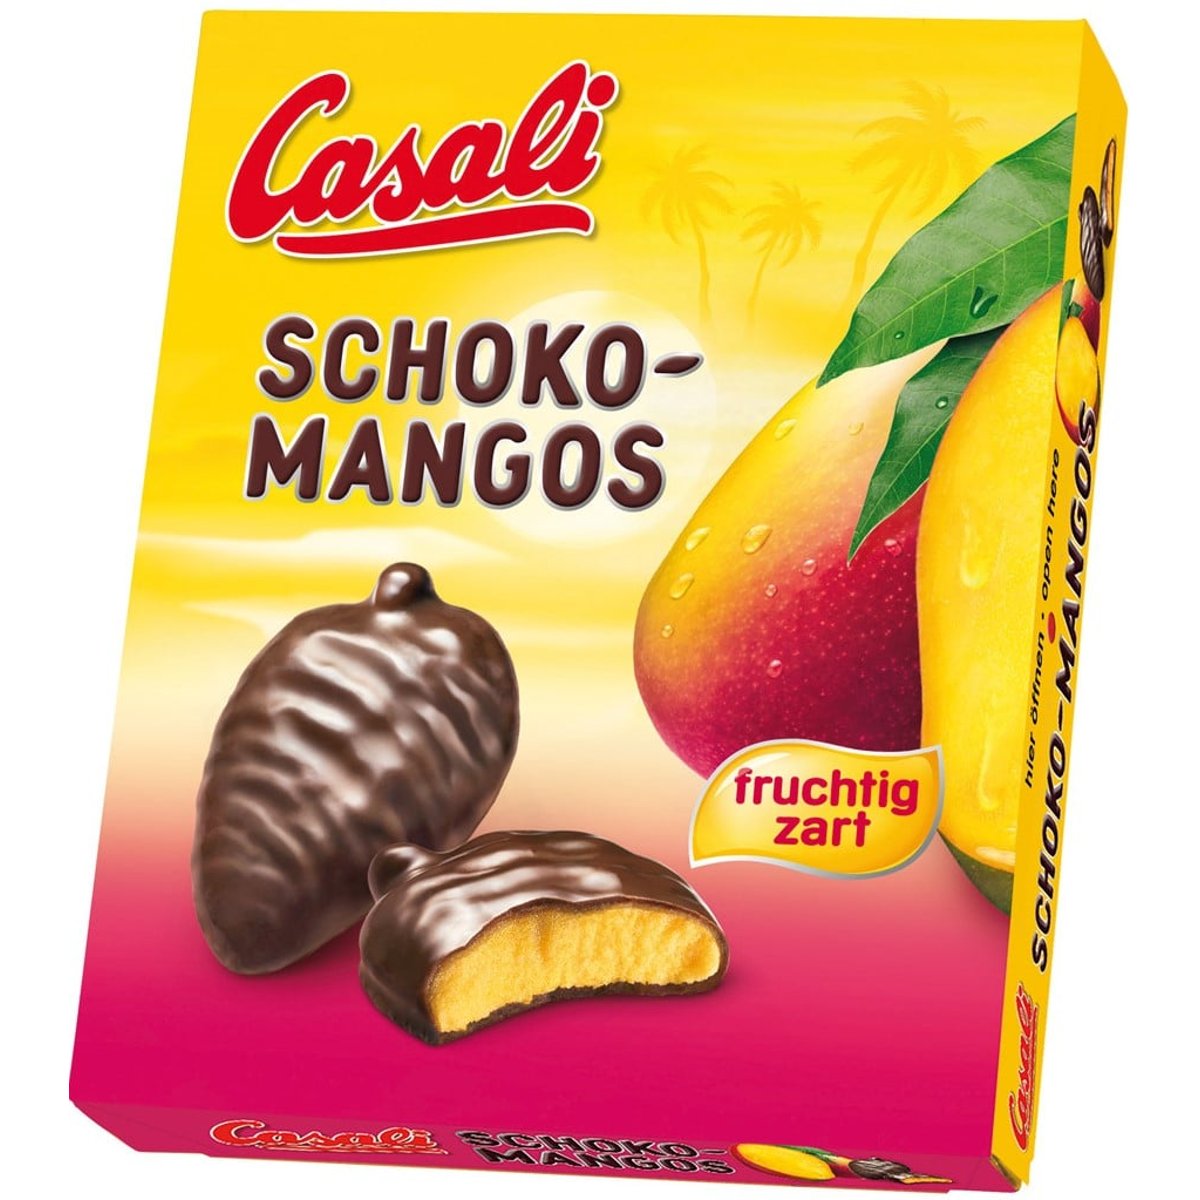 Casali Schoko Mango